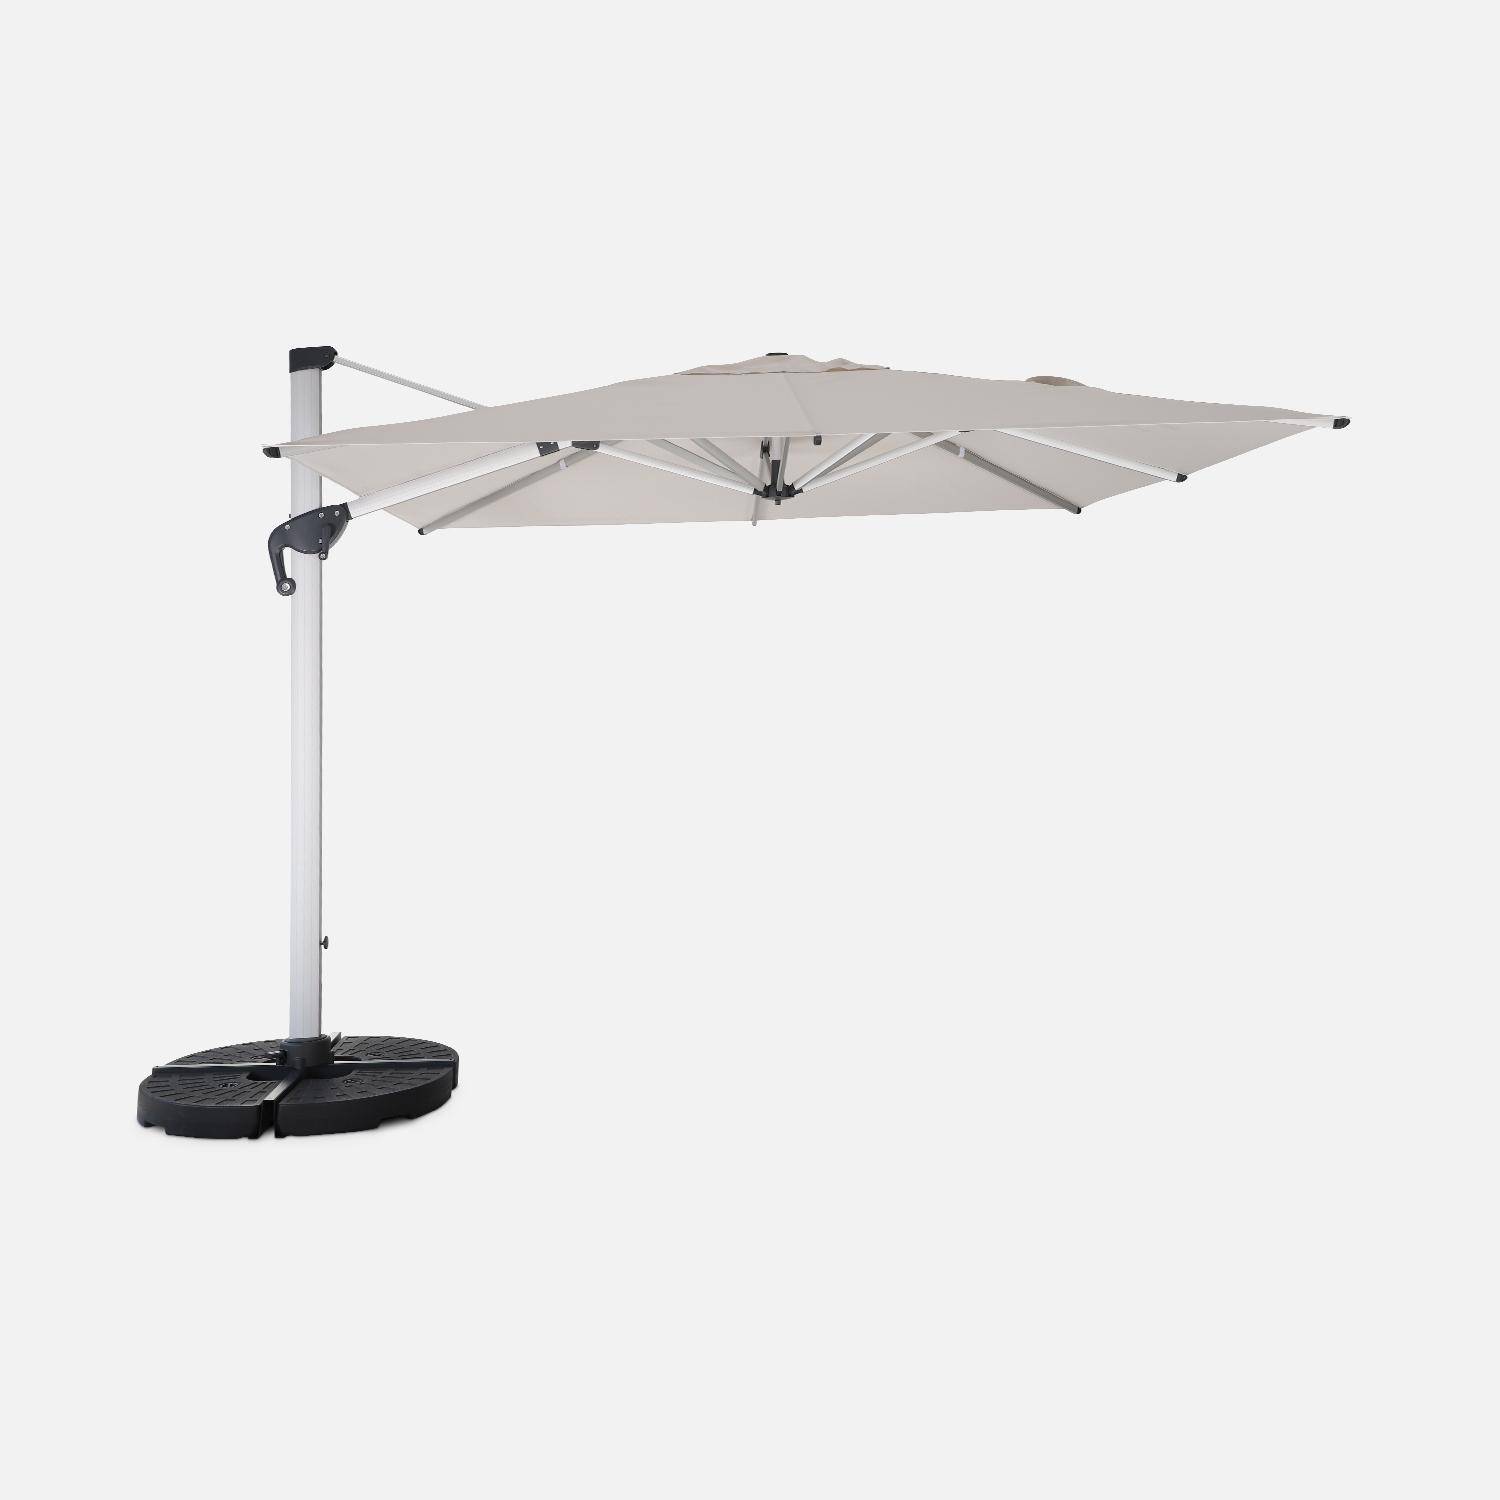 Topkwaliteit parasol, 3x3m, beige polyester doek, geanodiseerd aluminium frame, hoes inbegrepen Photo2